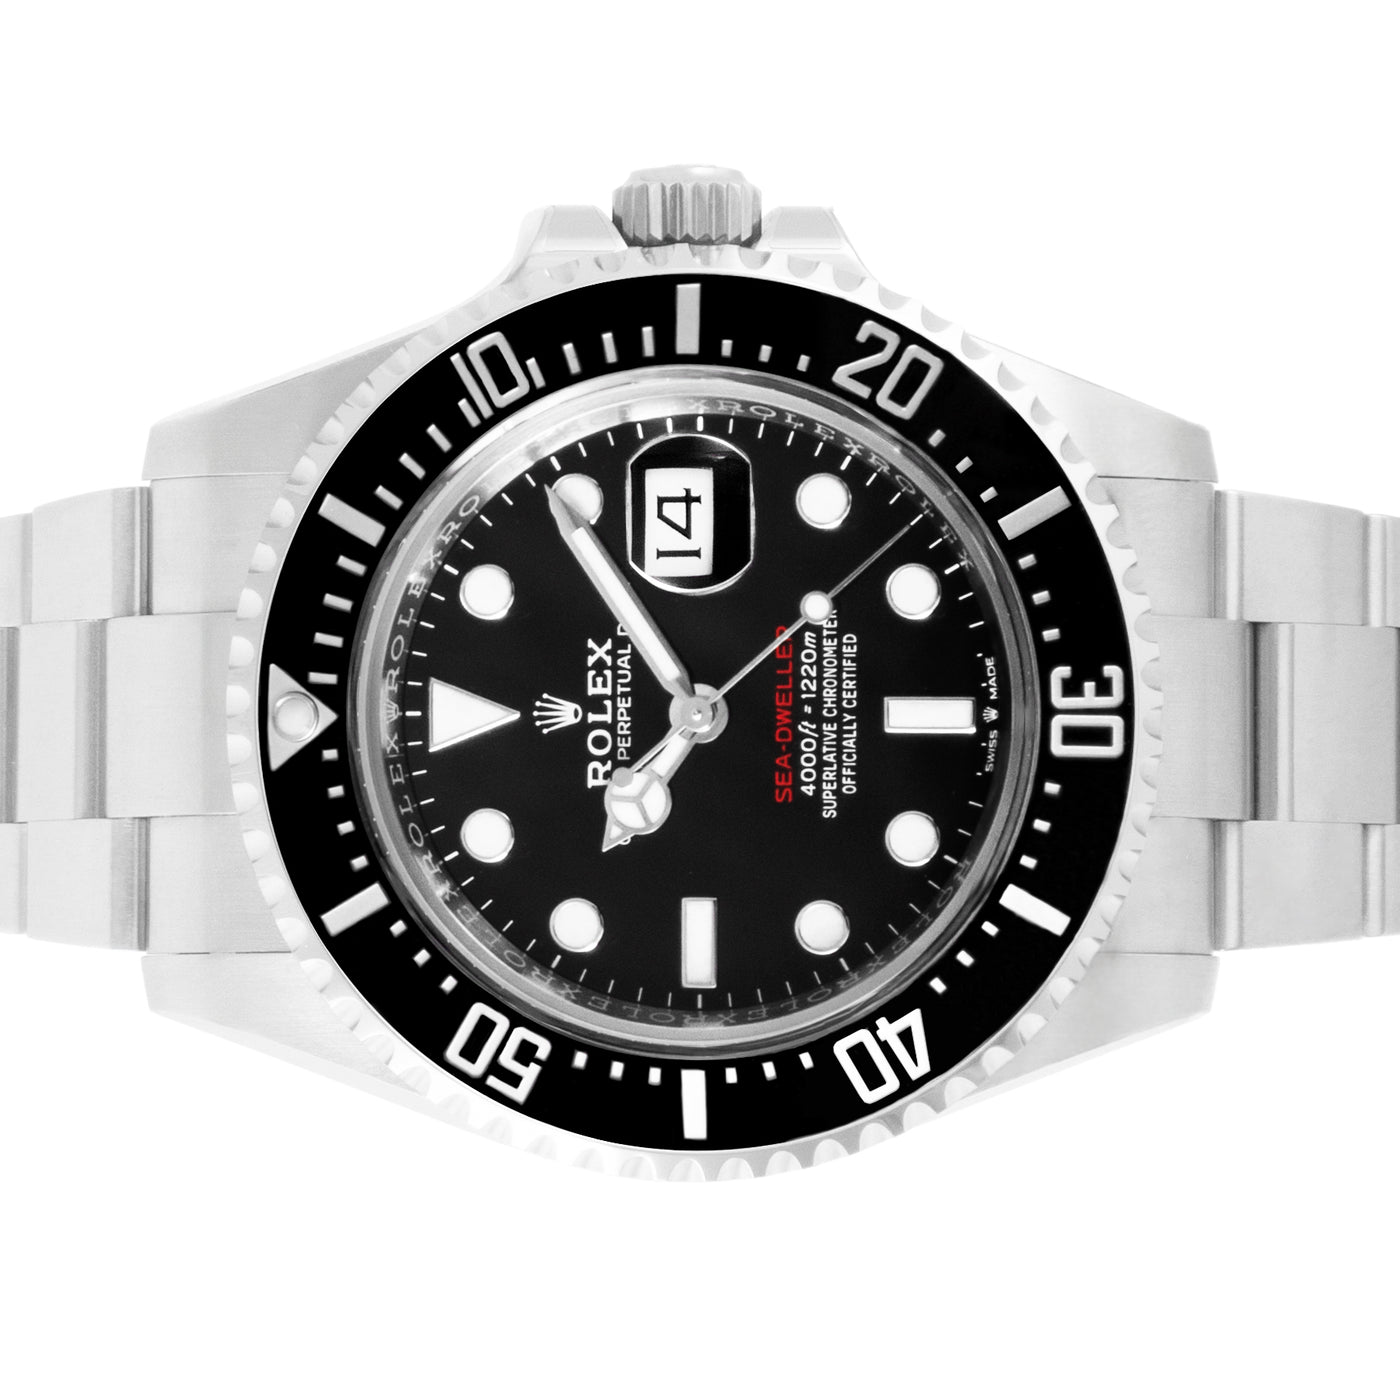 Rolex Sea-Dweller 126600 | TImepiece360